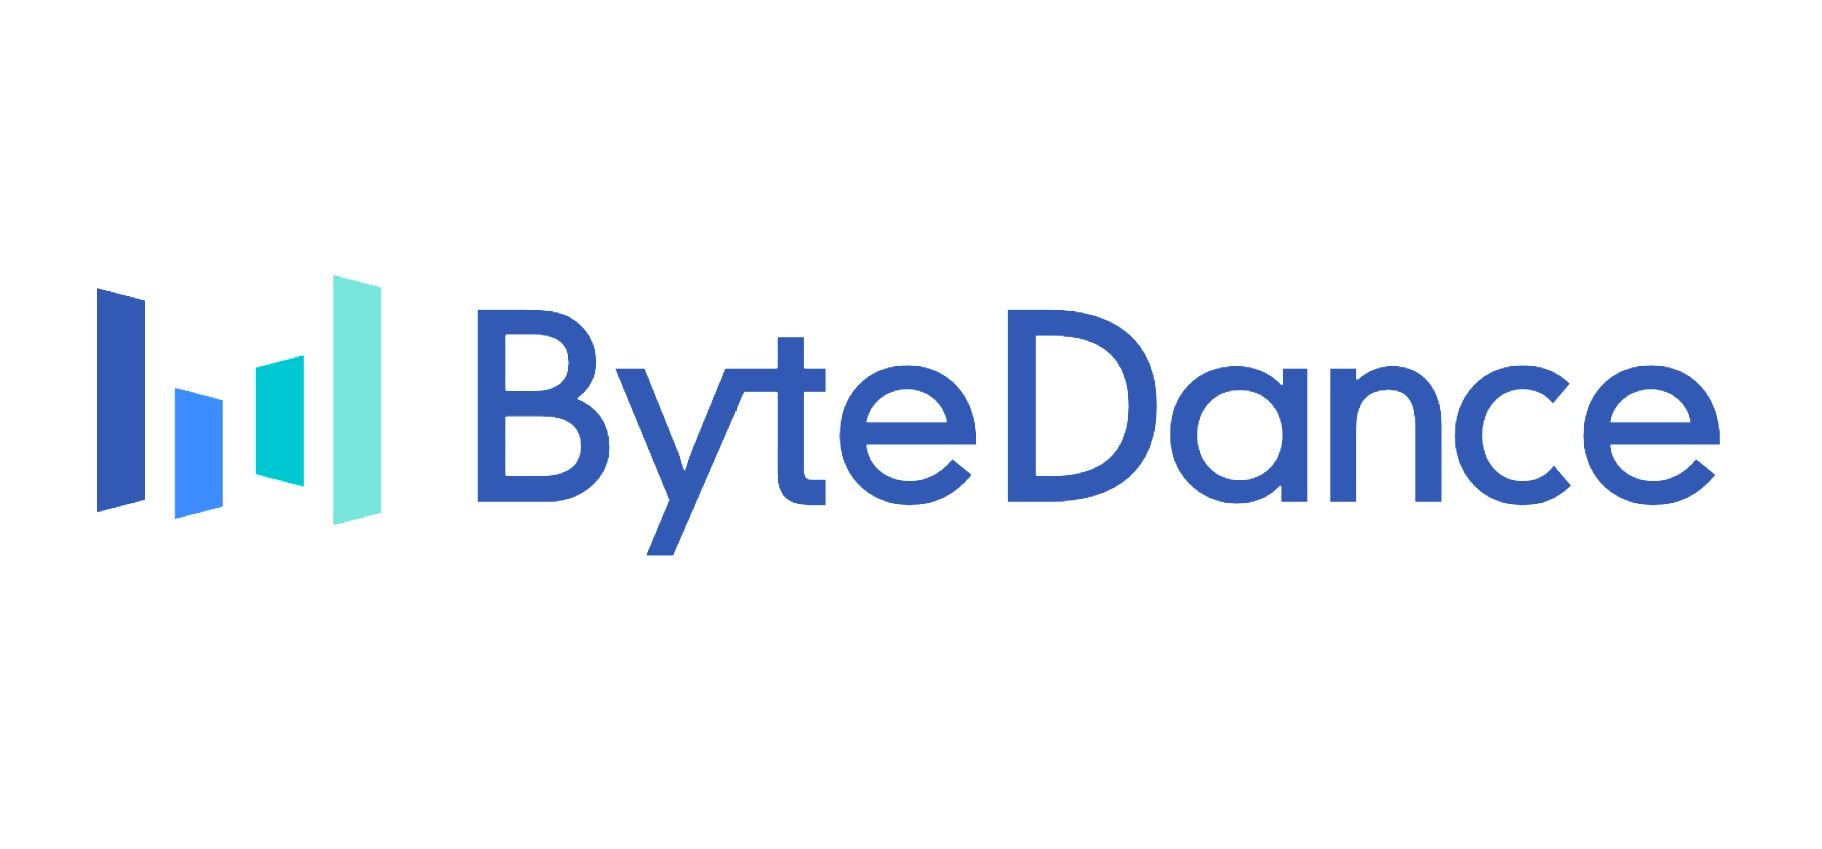 bytedance-featured-the-tech-portal.jpg